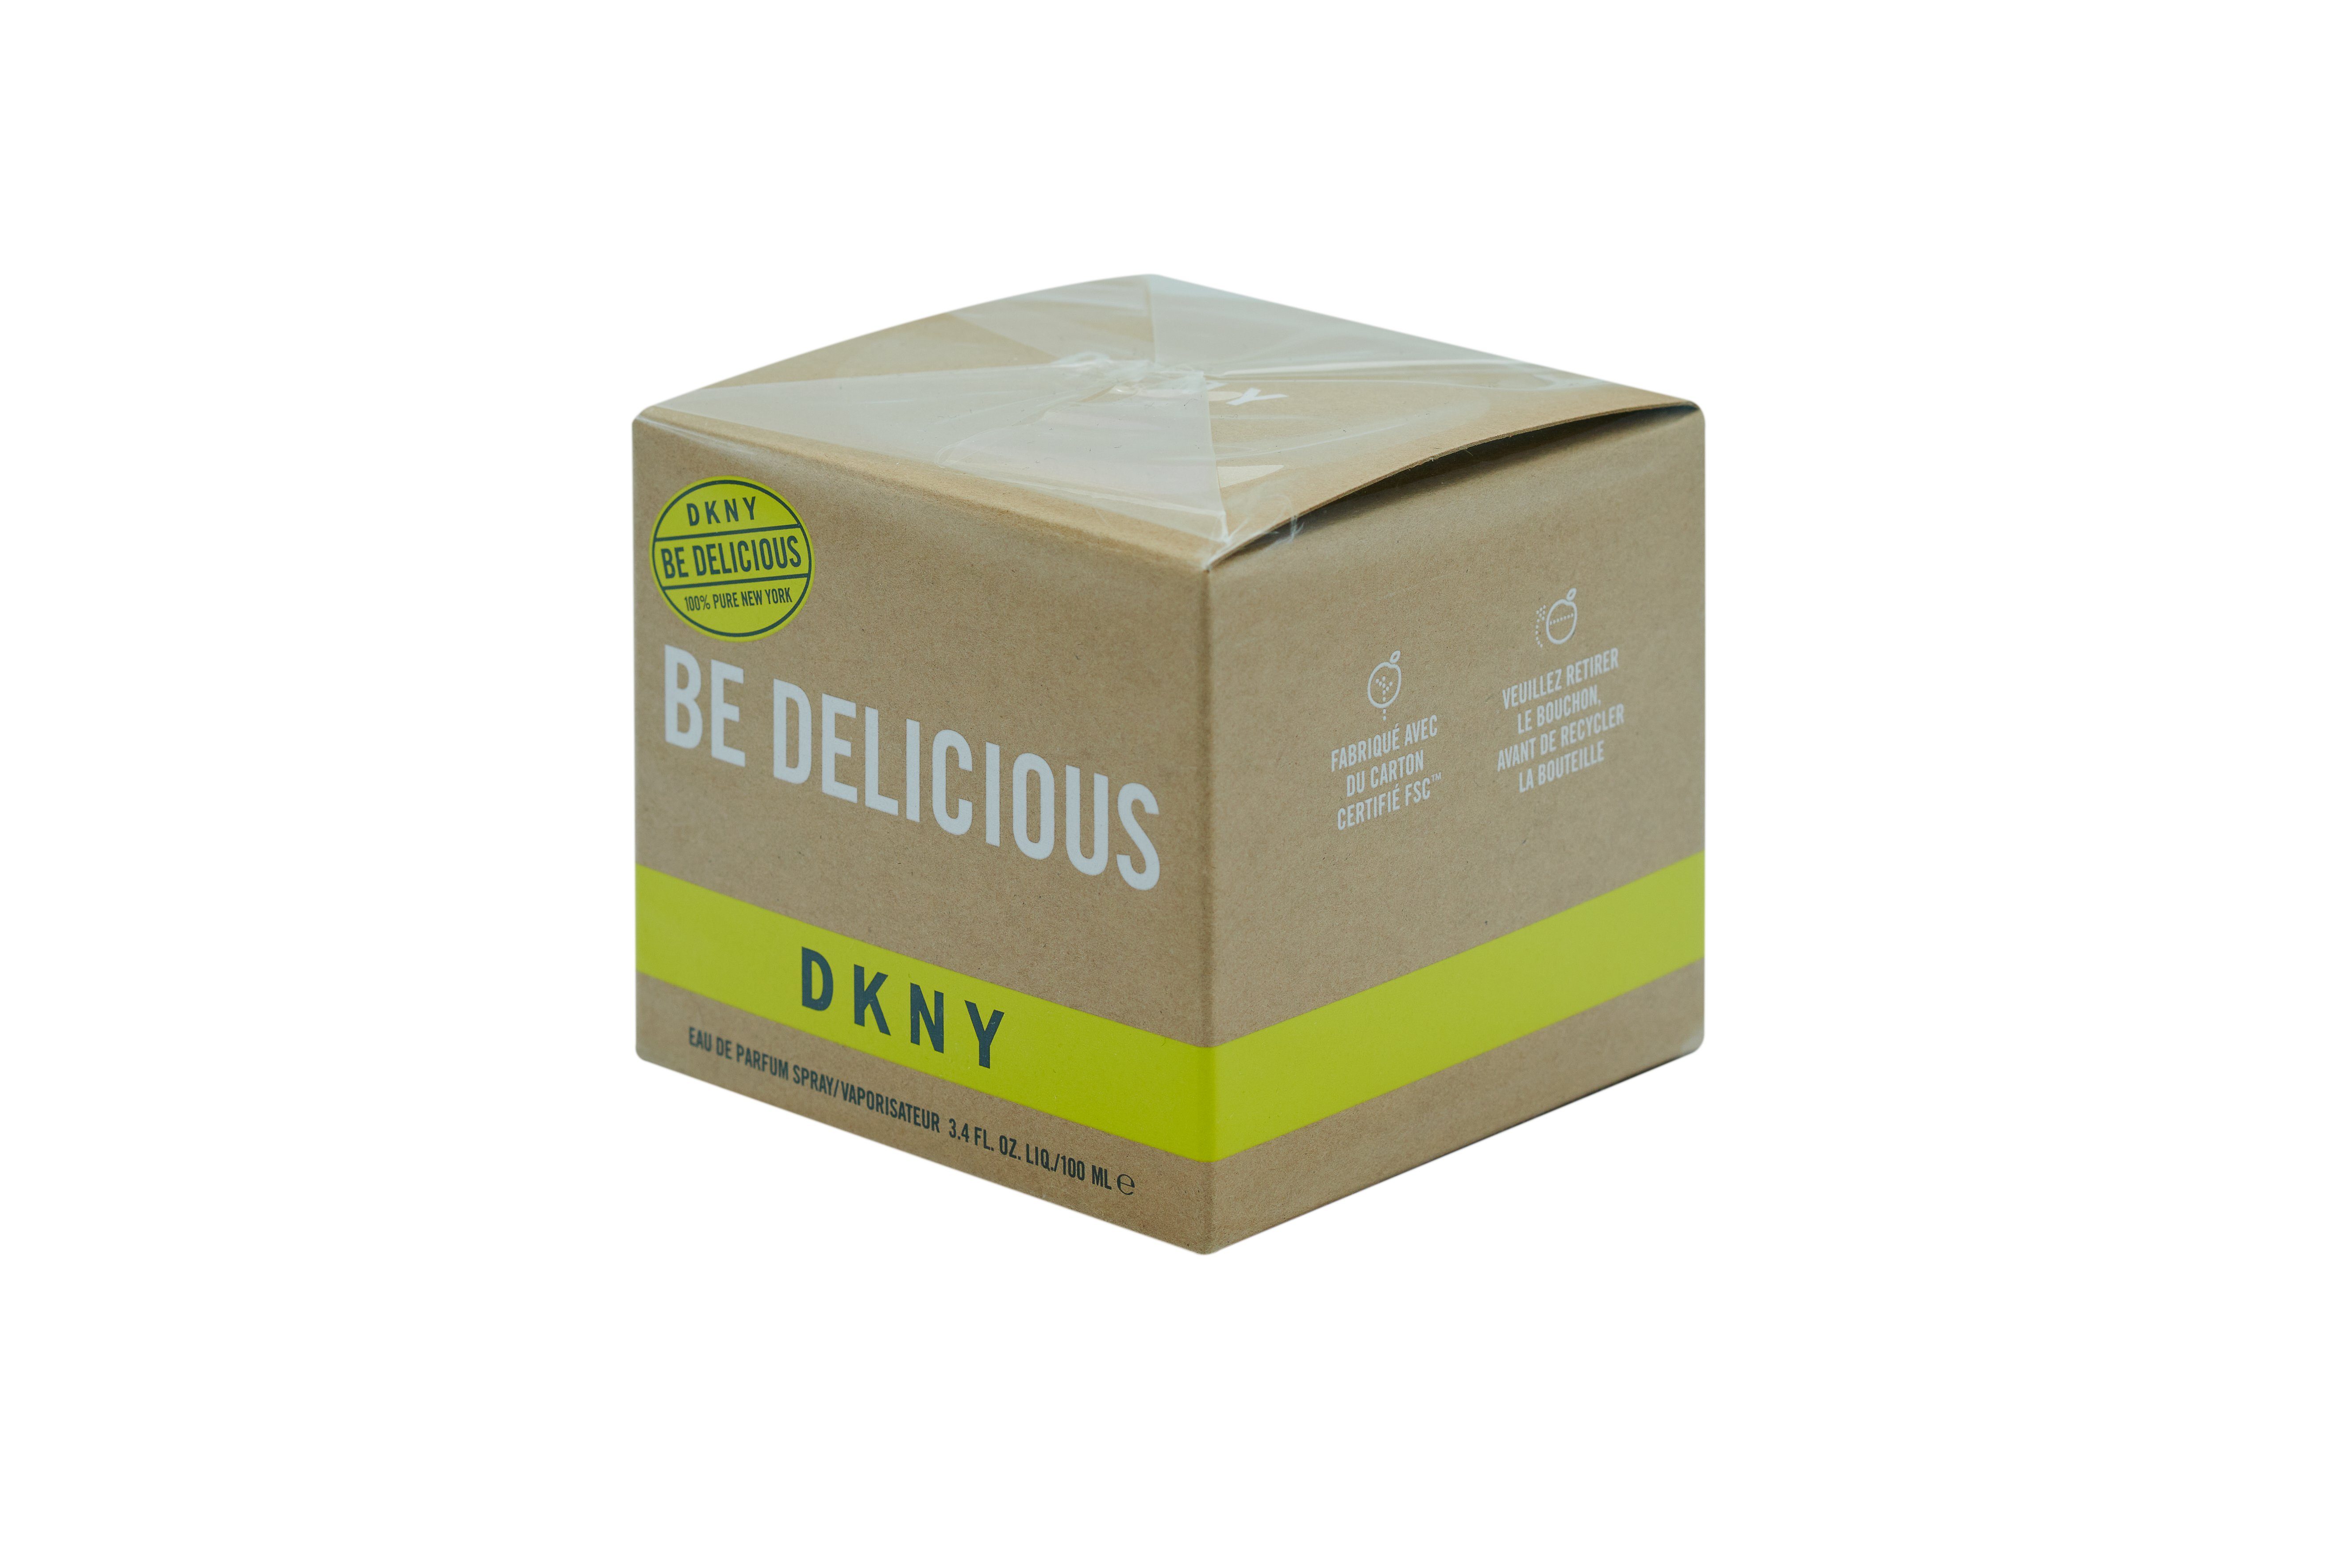 DKNY Eau de Parfum Be Parfum de Delicious 100 ml Spray Eau